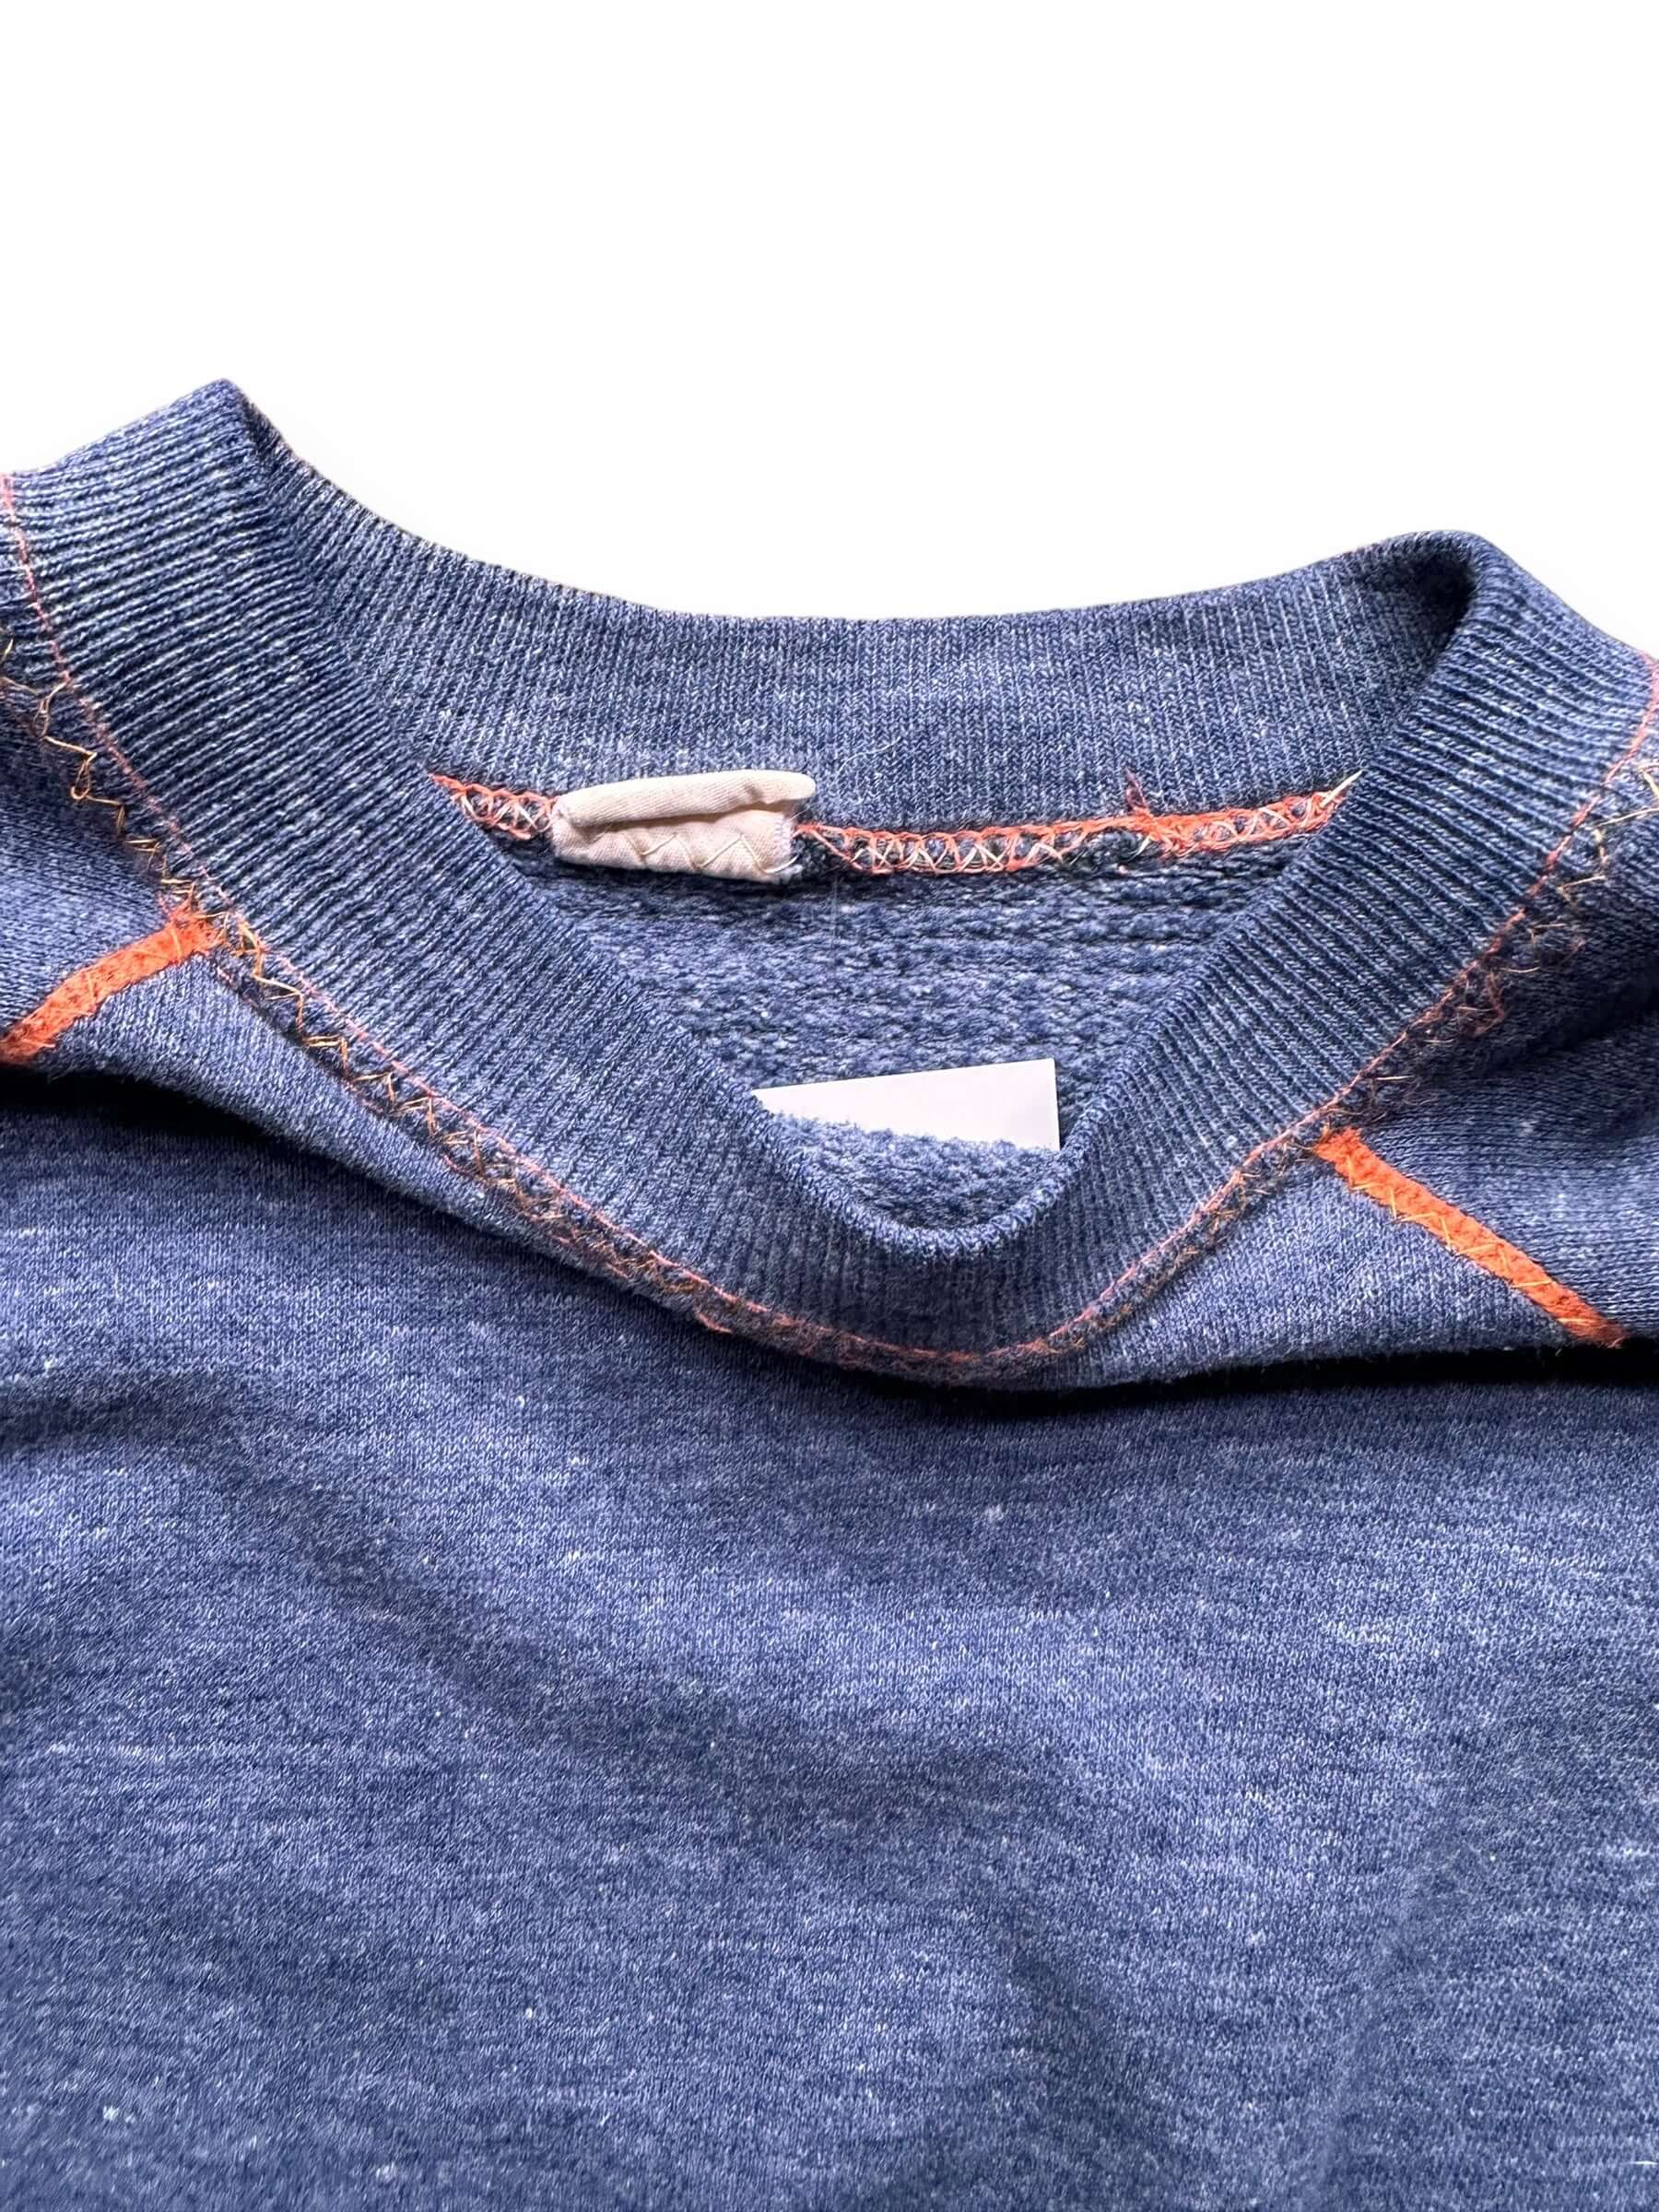 Tag View of Vintage Blue & Orange Contrast Stitch Crewneck SZ M | Vintage Sweatshirt Seattle